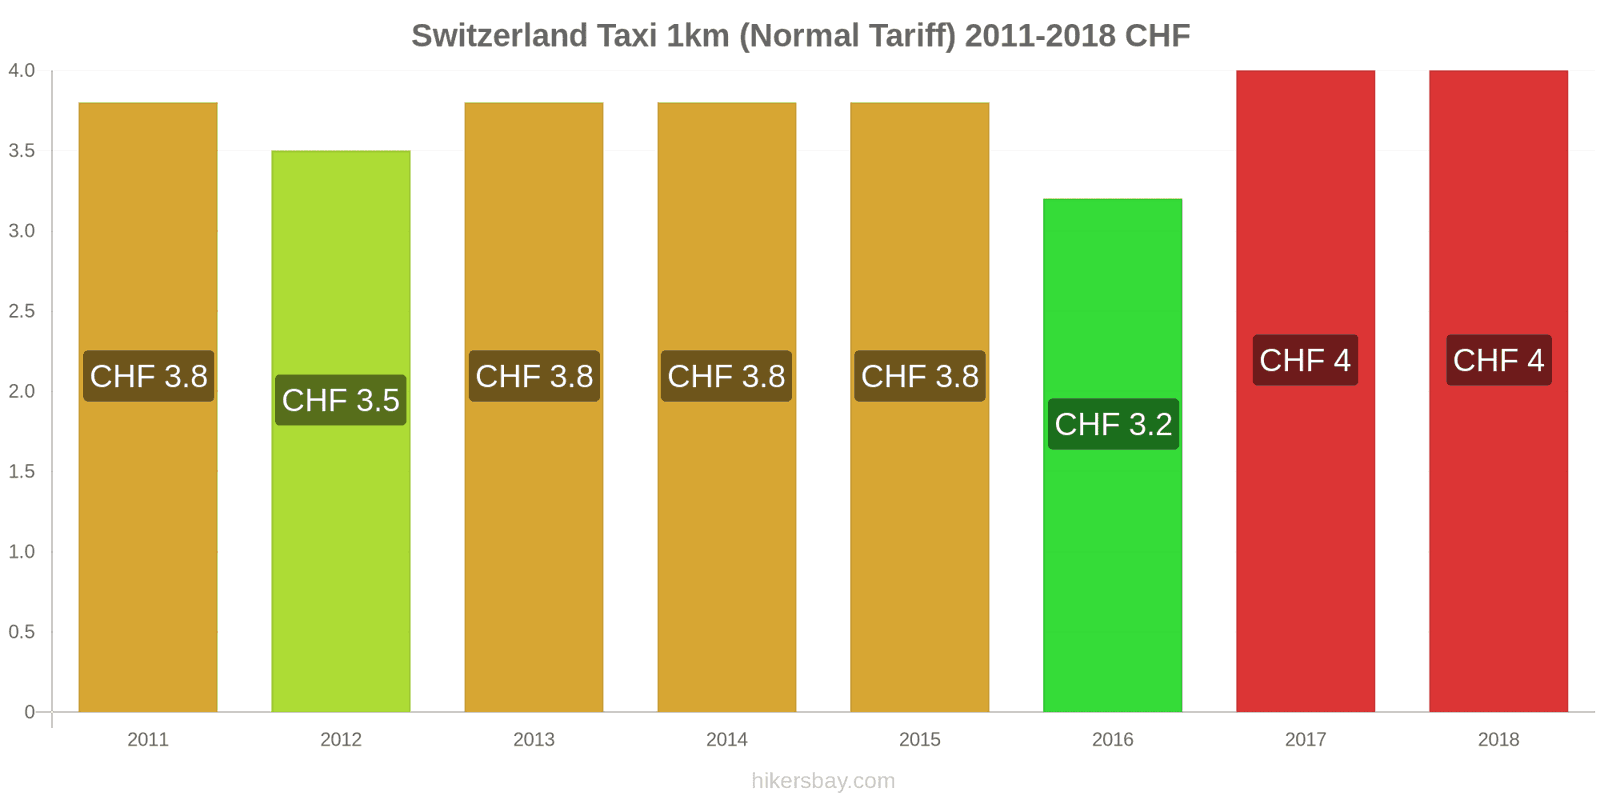 Switzerland price changes Taxi 1km (Normal Tariff) hikersbay.com